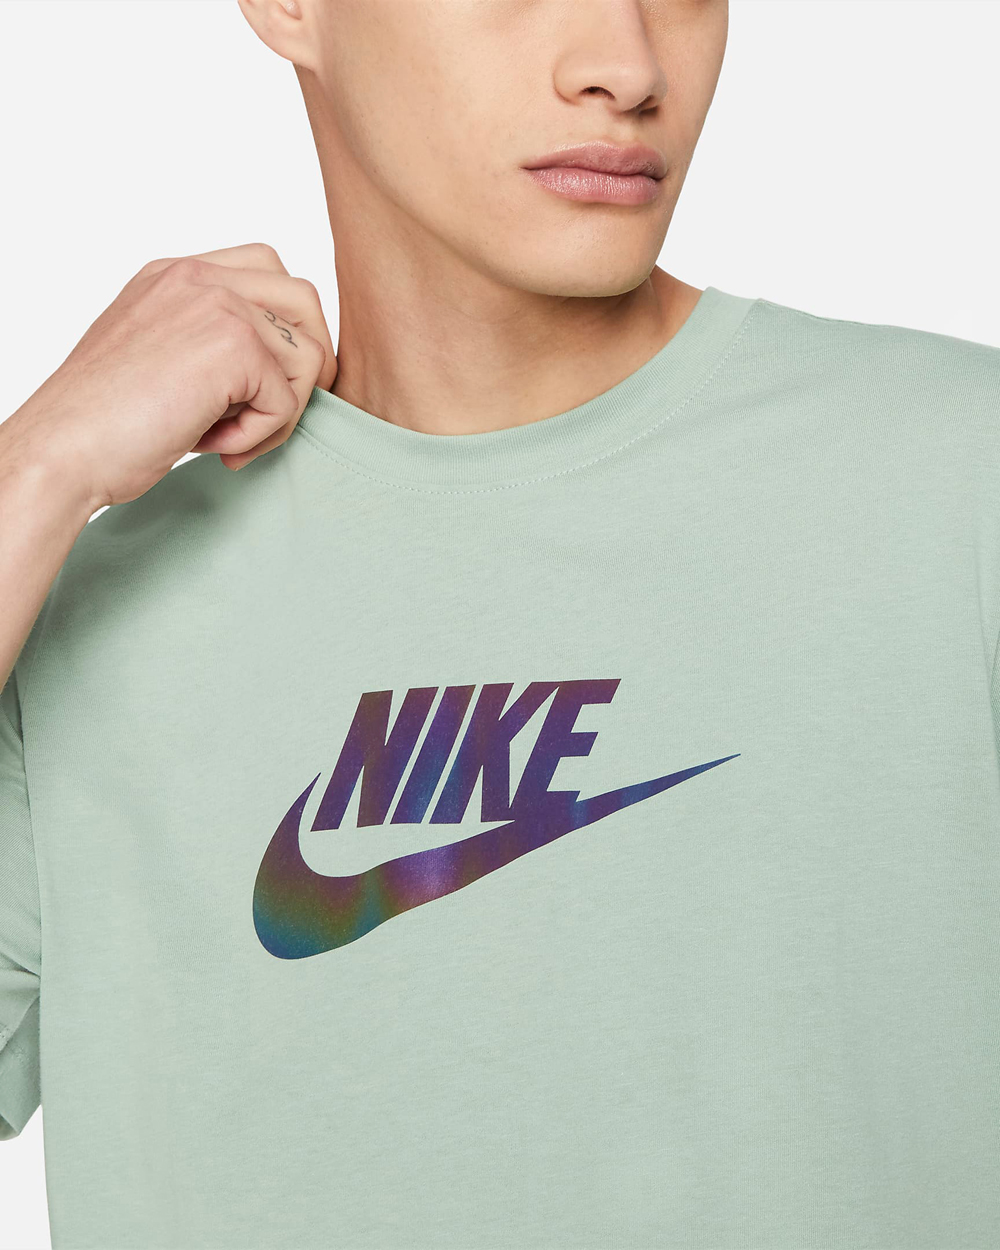 nike-iridescent-shirt-steam-green-1